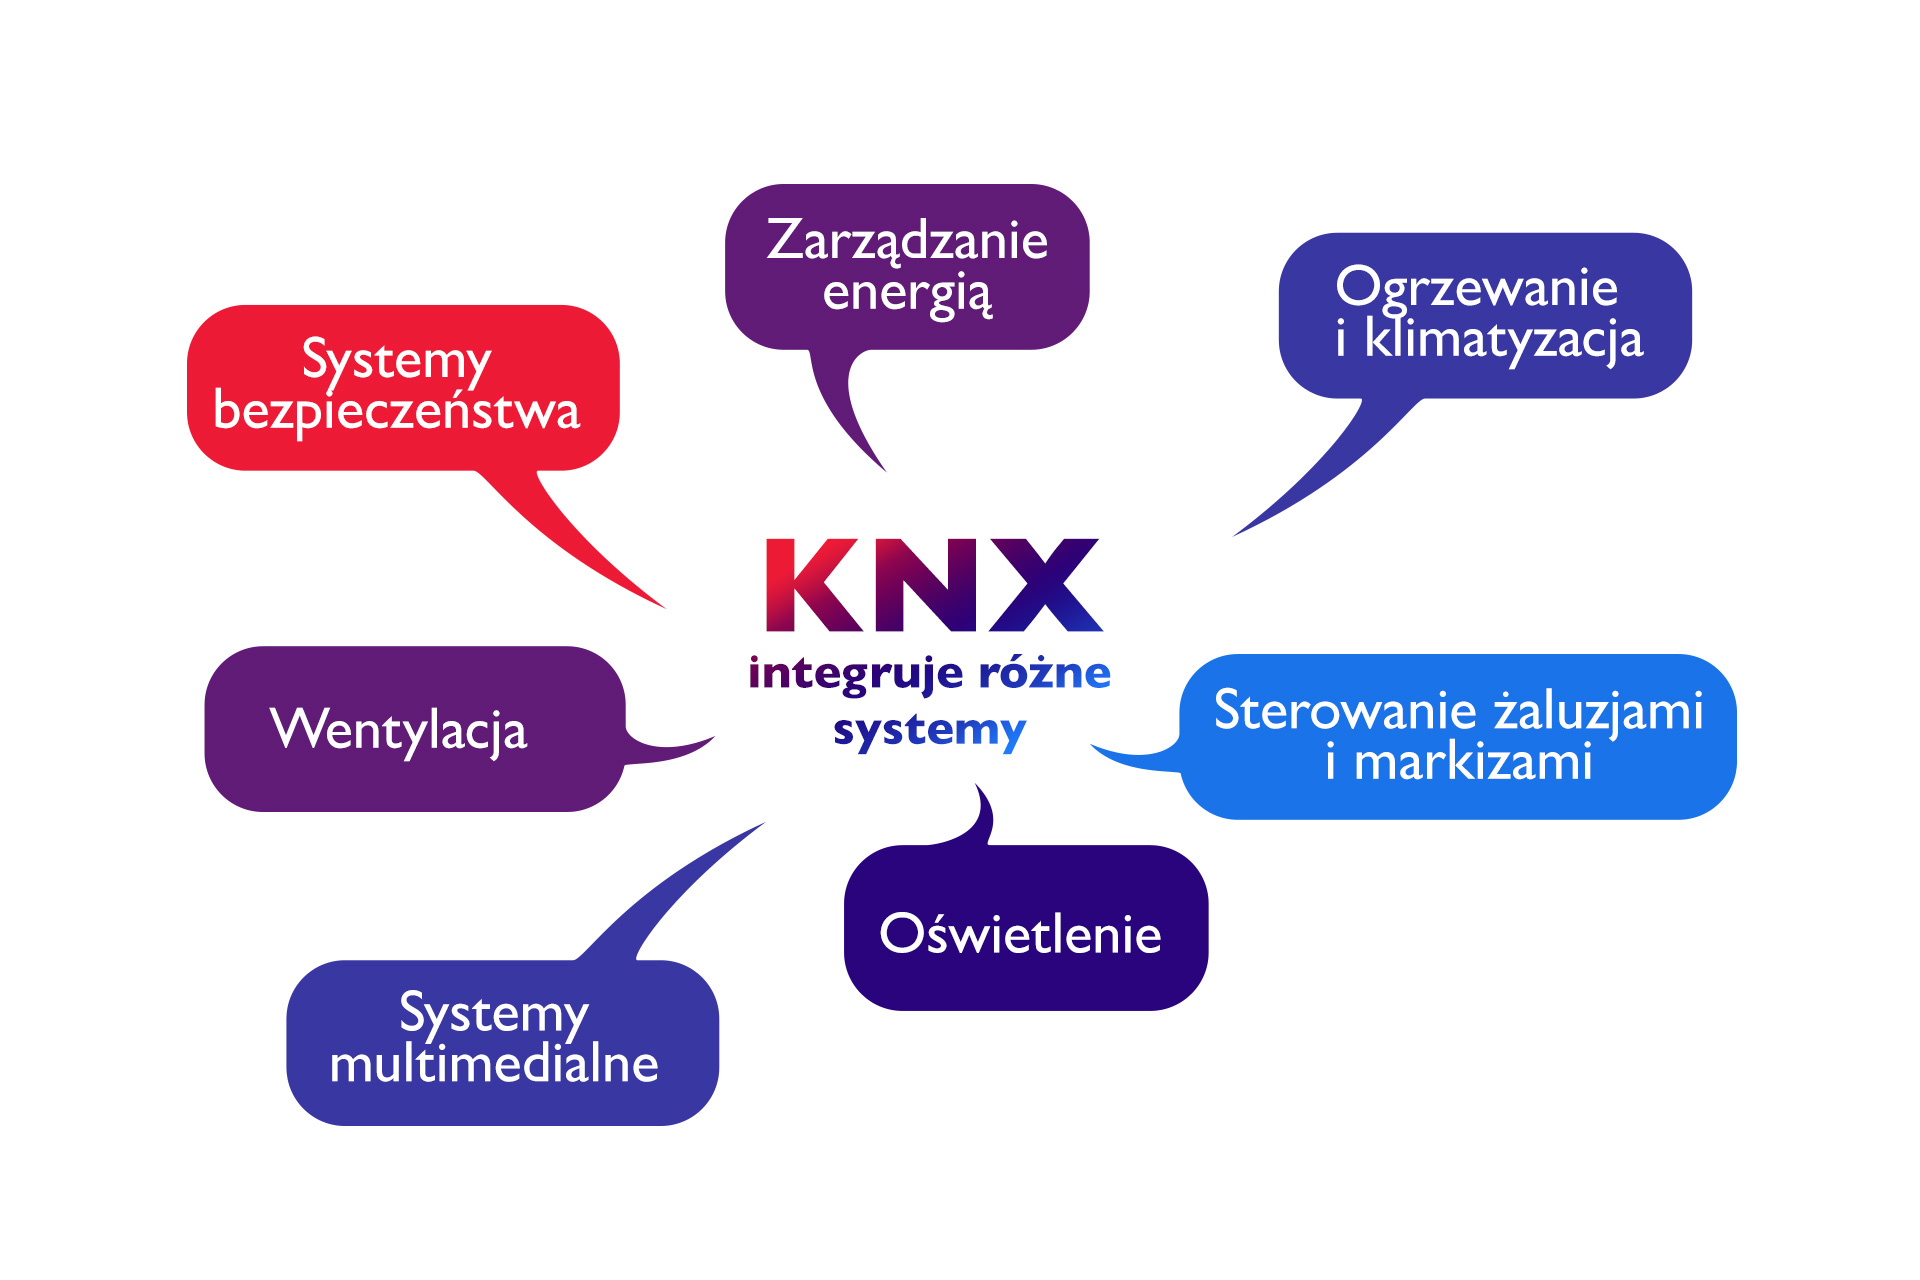 KNX - międzynarodowy standard w dziedzinie inteligentnych instalacji